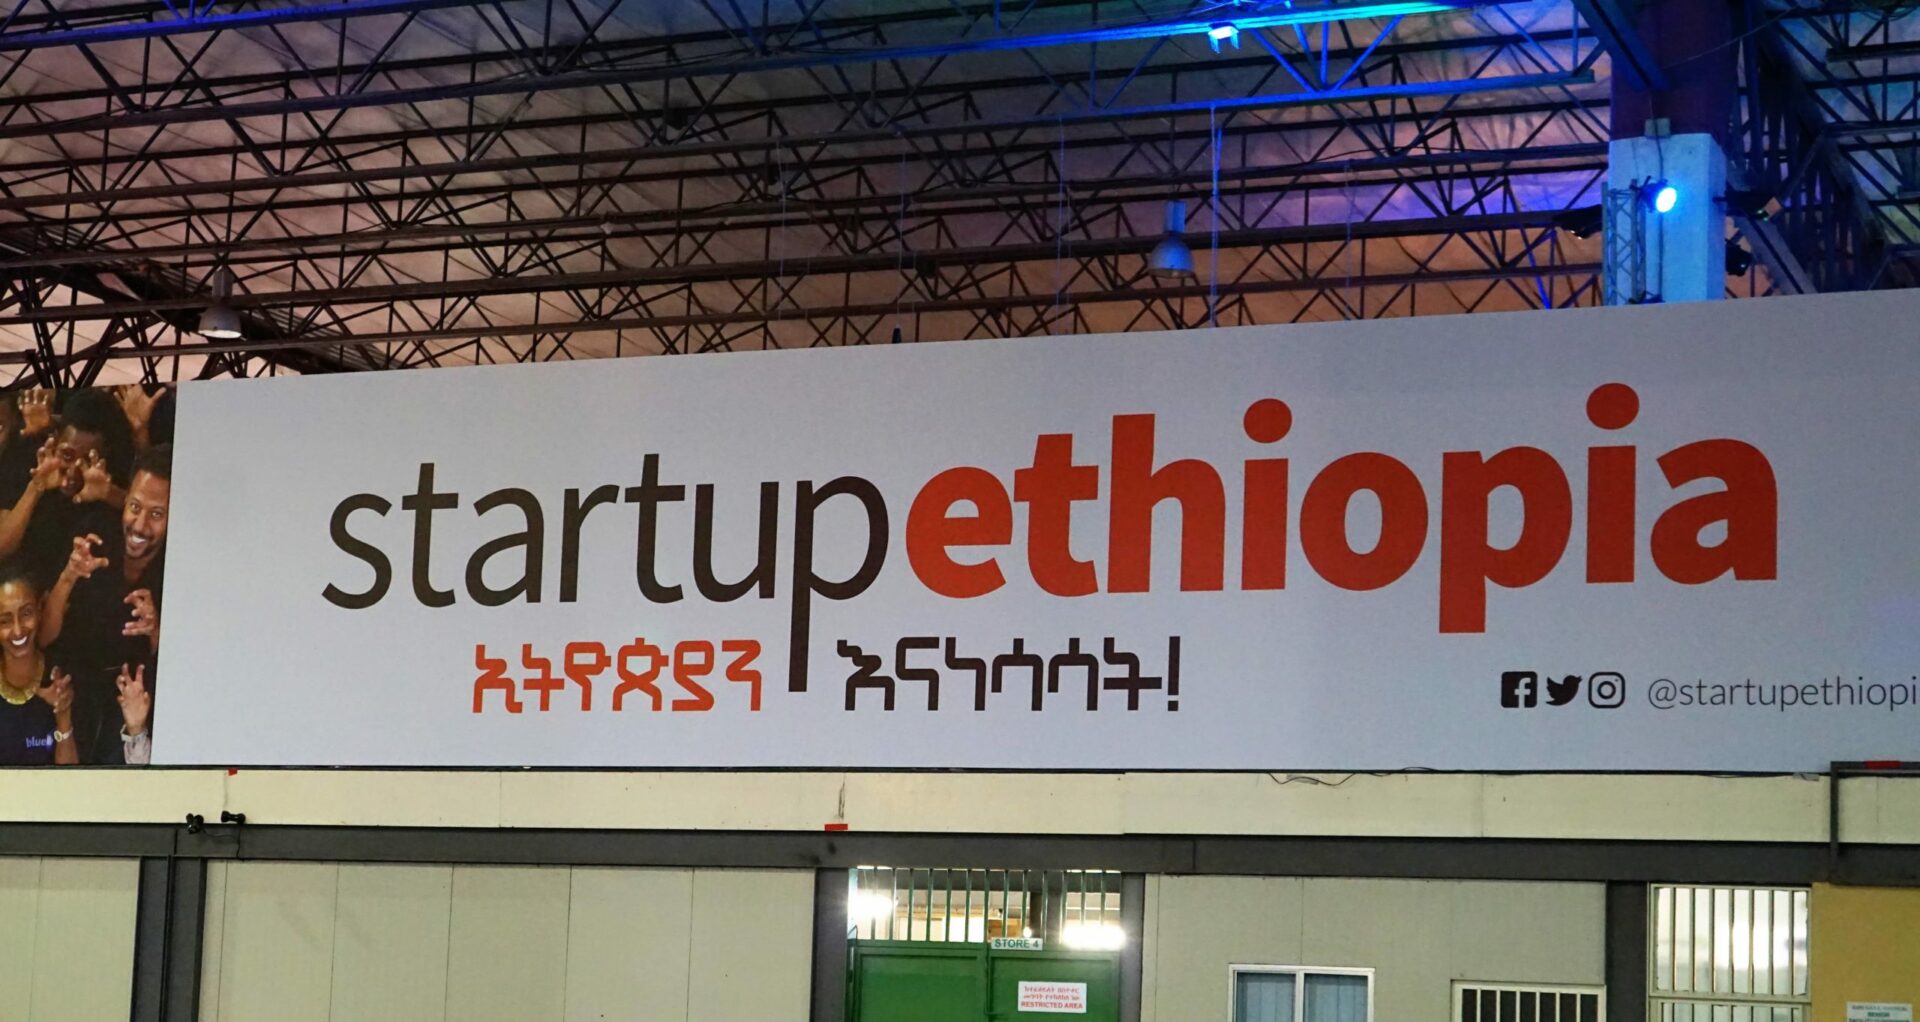 weVenture is first venture capital incubator in Ethiopia